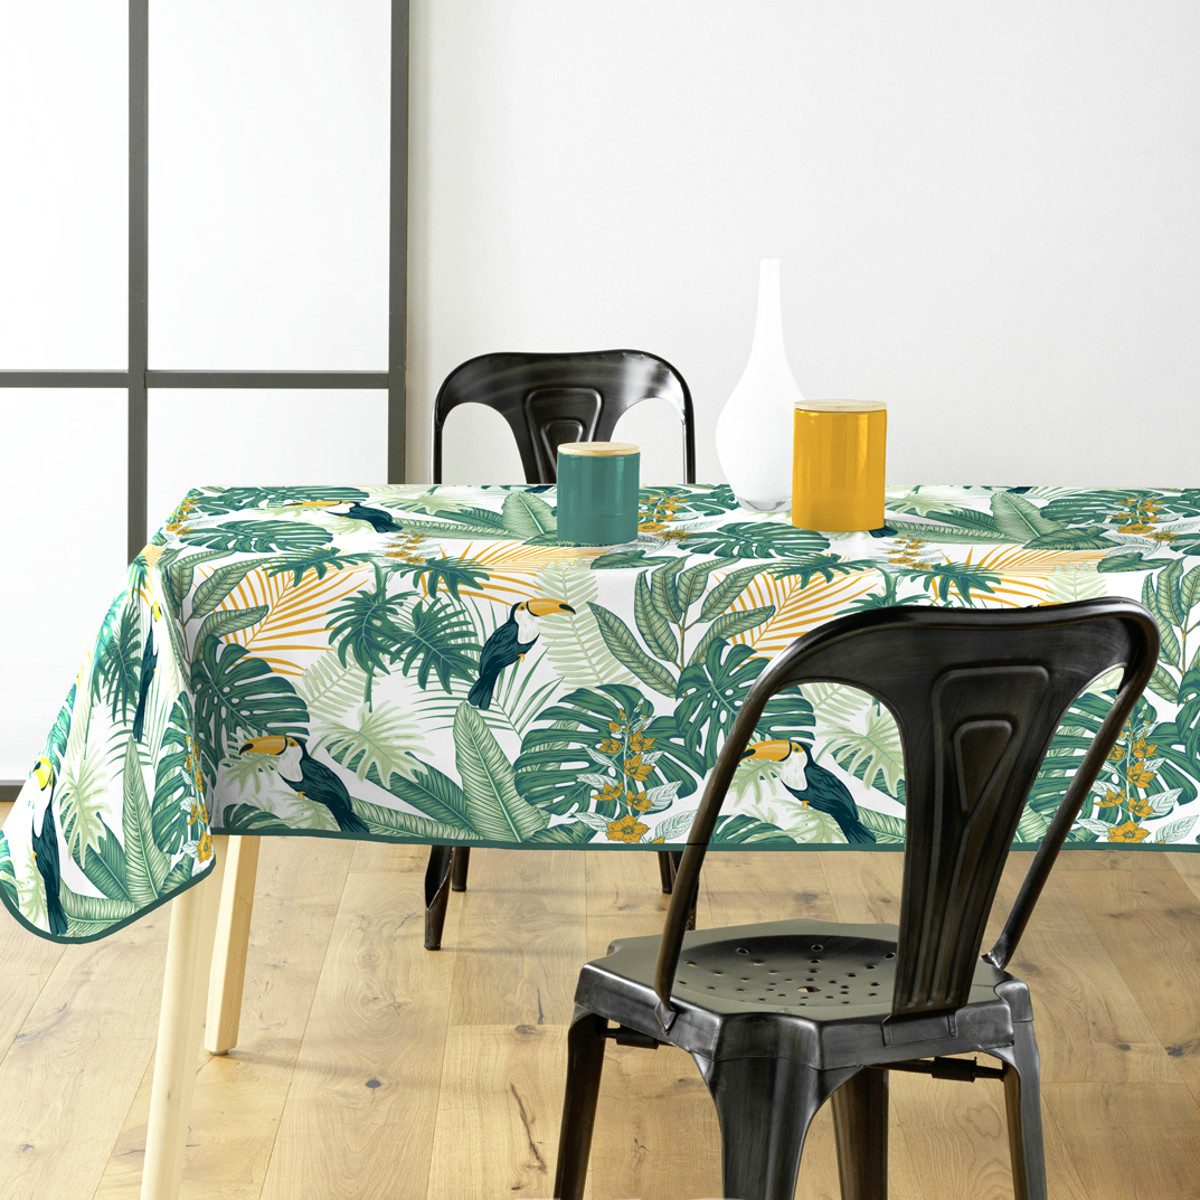 Sanixa Gartentischdecke Tischdecke PVC Grün Dschungel 140 x 240 cm Tischtuch Kunststoff (Tischschutz Dschungeldesign), Gartentischdecke Balkontischdecke Tischtuch